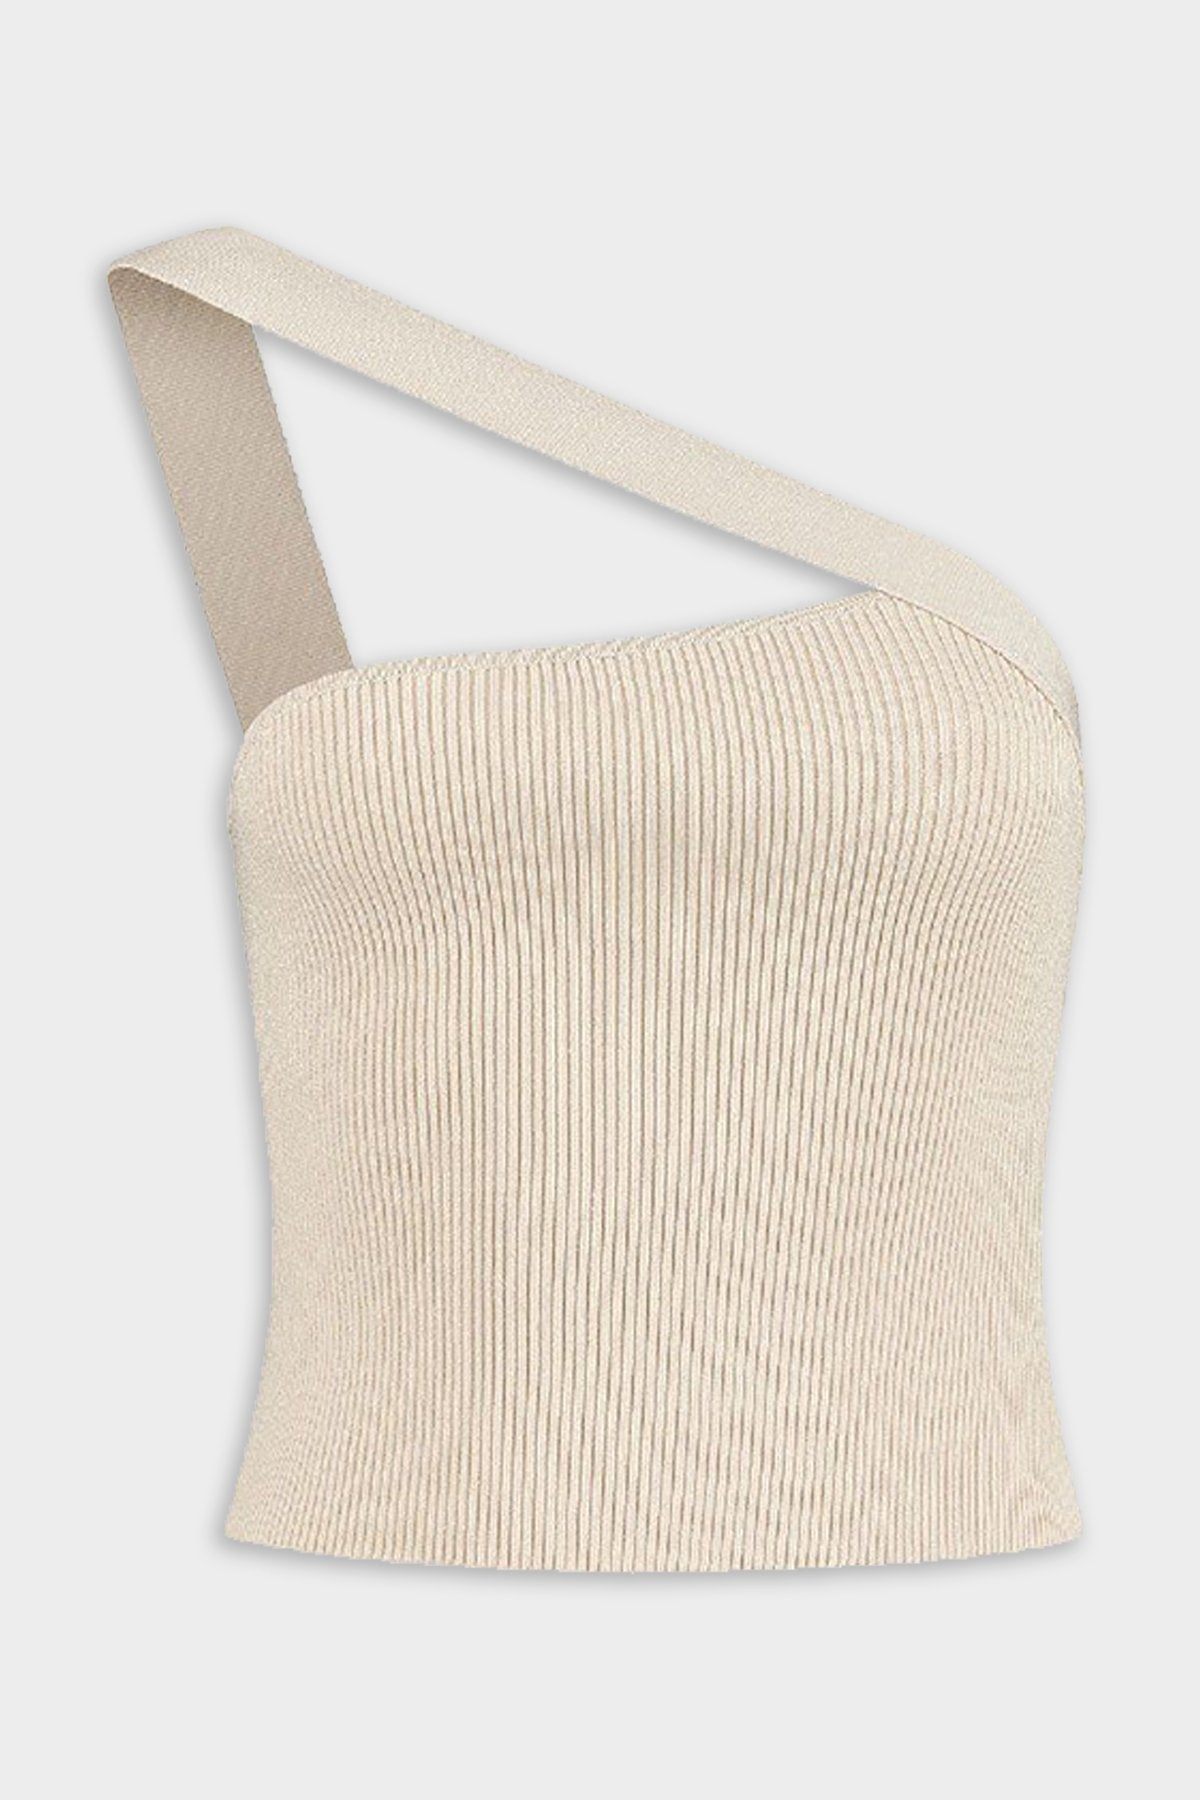 Selas One-Shoulder Knit Top in Creme - shop-olivia.com